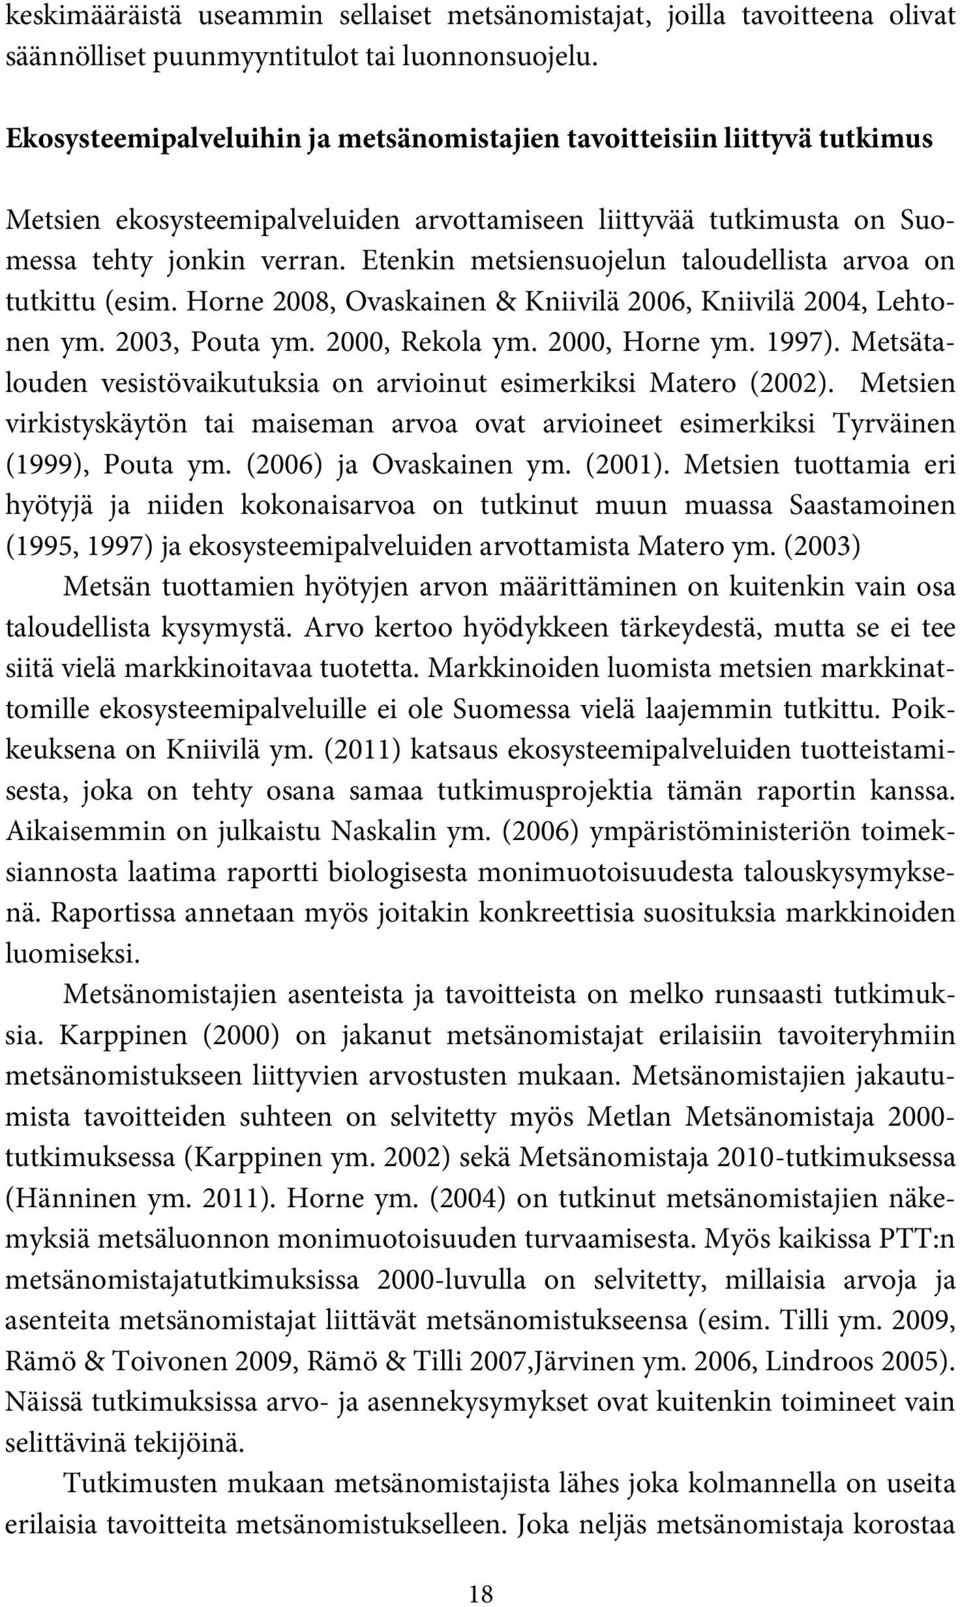 Etenkin metsiensuojelun taloudellista arvoa on tutkittu (esim. Horne 2008, Ovaskainen & Kniivilä 2006, Kniivilä 2004, Lehtonen ym. 2003, Pouta ym. 2000, Rekola ym. 2000, Horne ym. 1997).